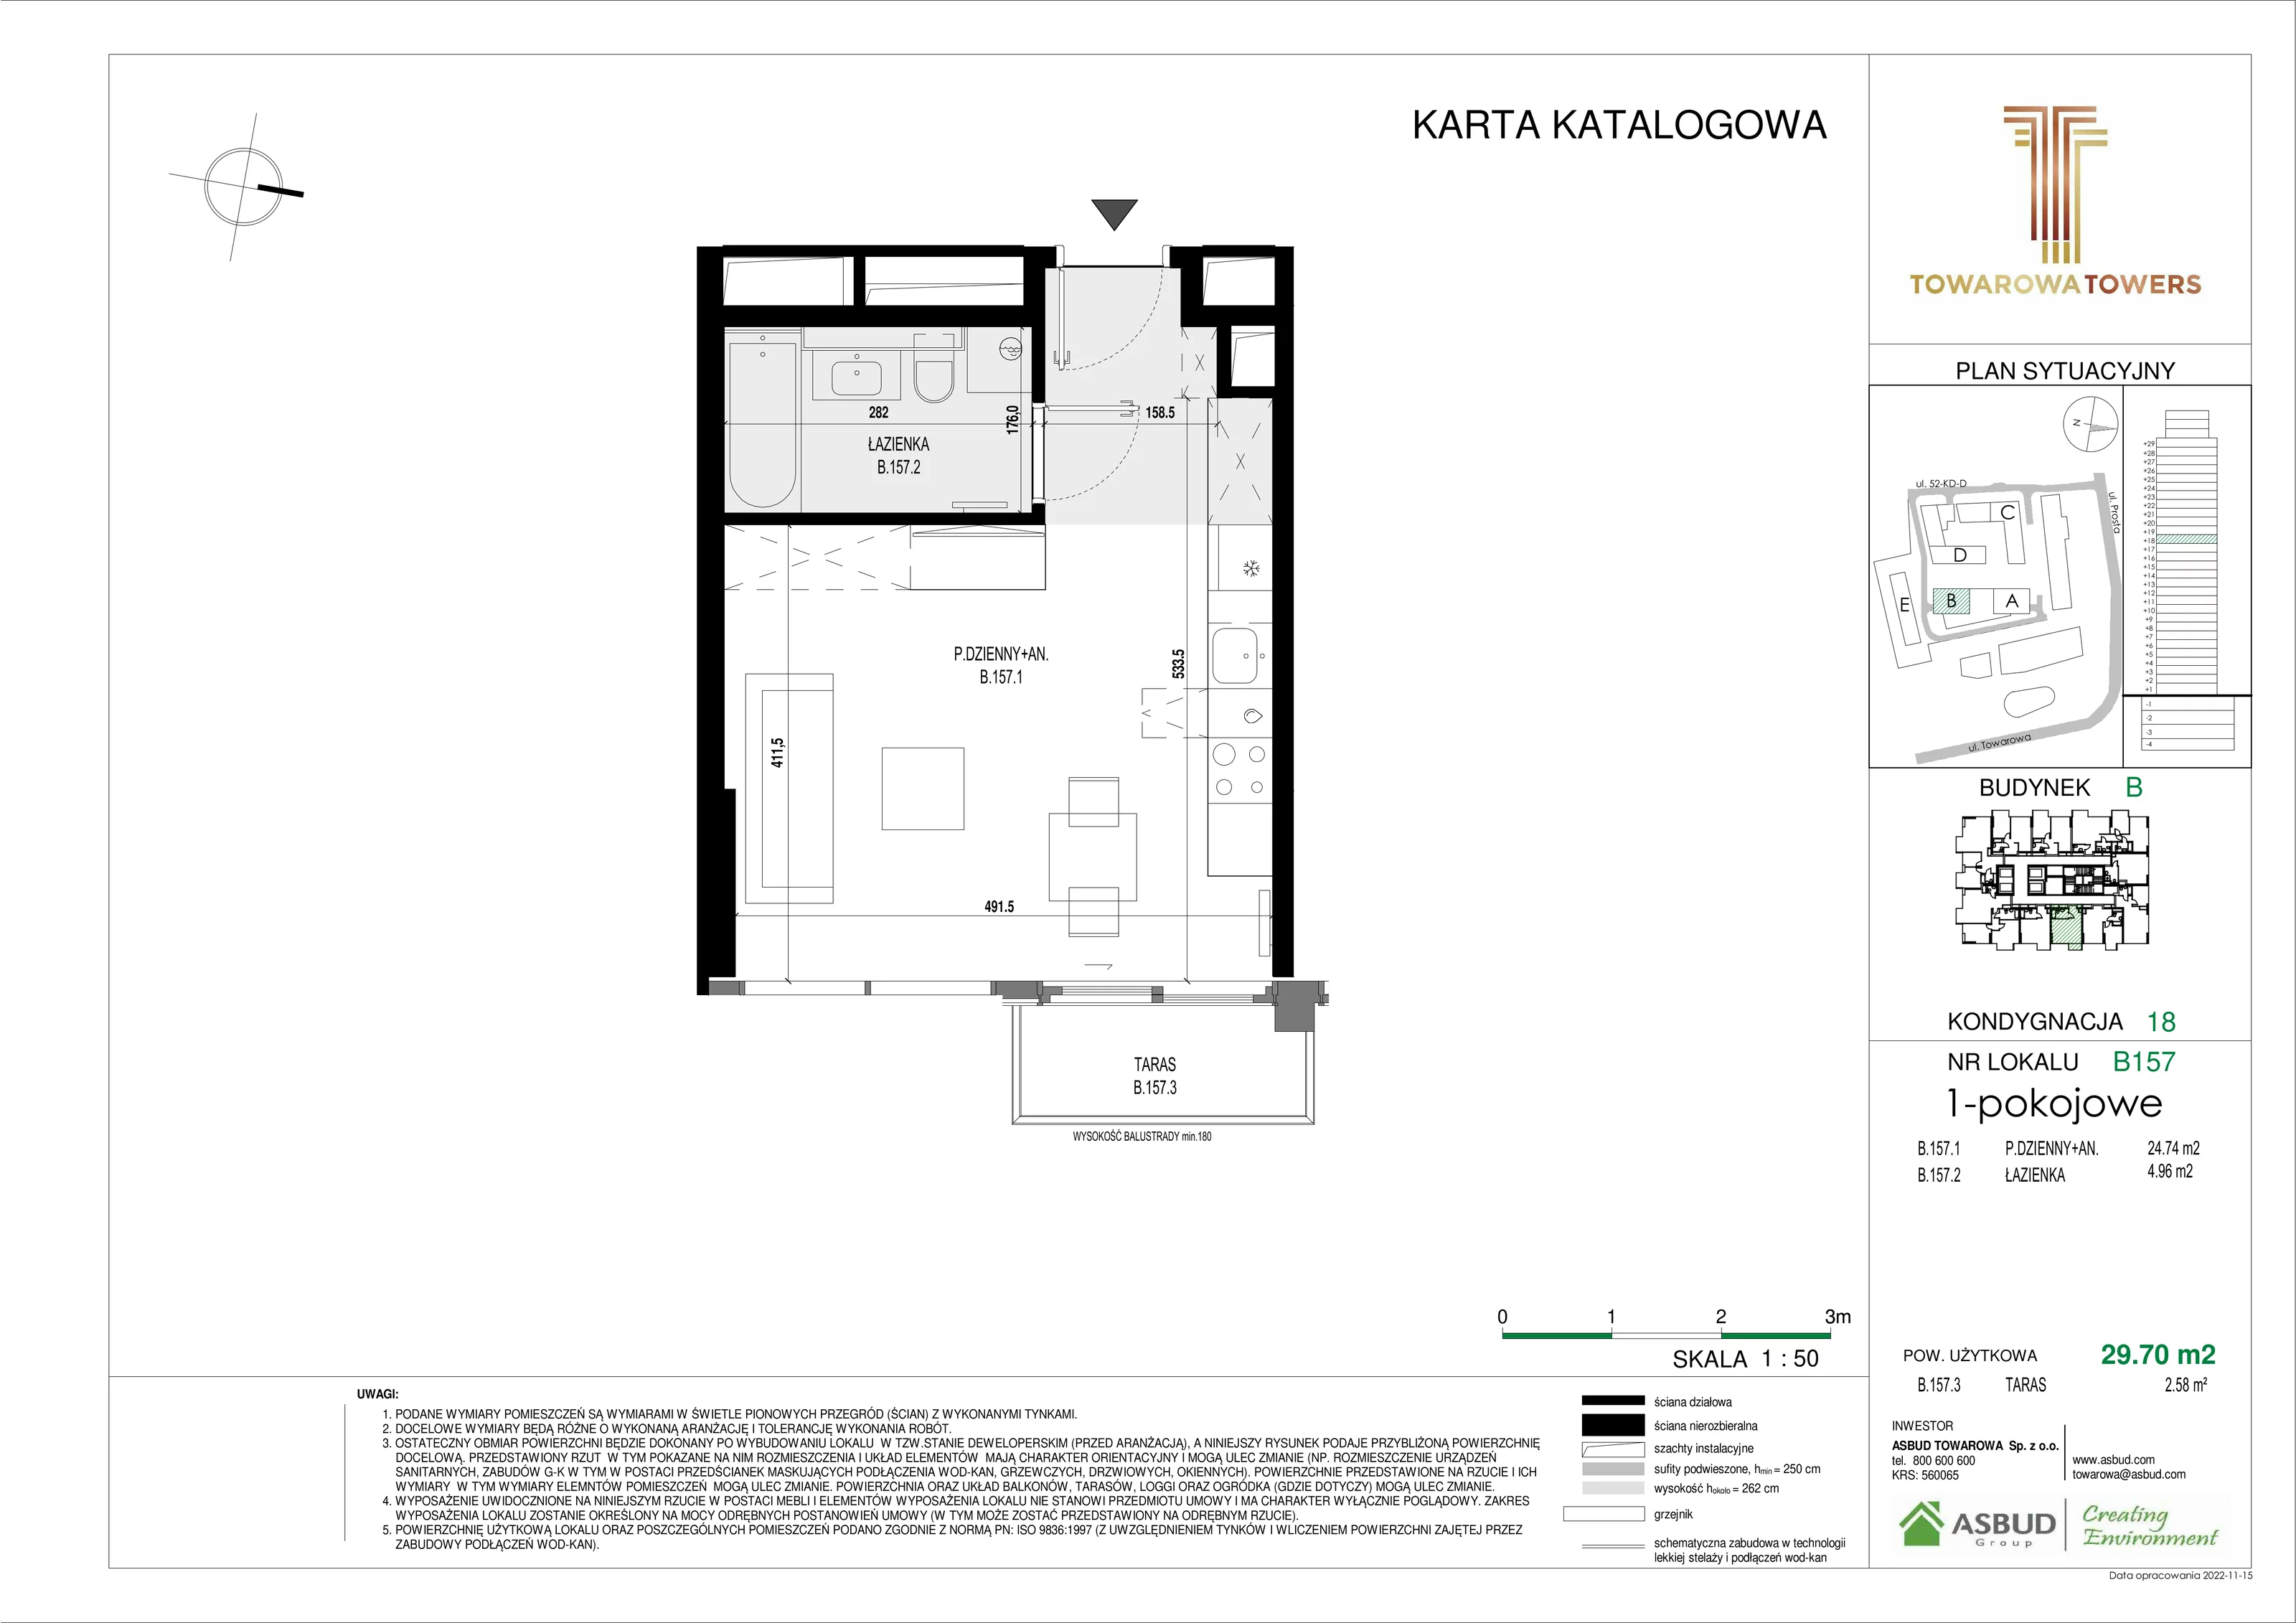 Mieszkanie 29,70 m², piętro 18, oferta nr B.157, Towarowa Towers, Warszawa, Wola, Czyste, ul. Towarowa